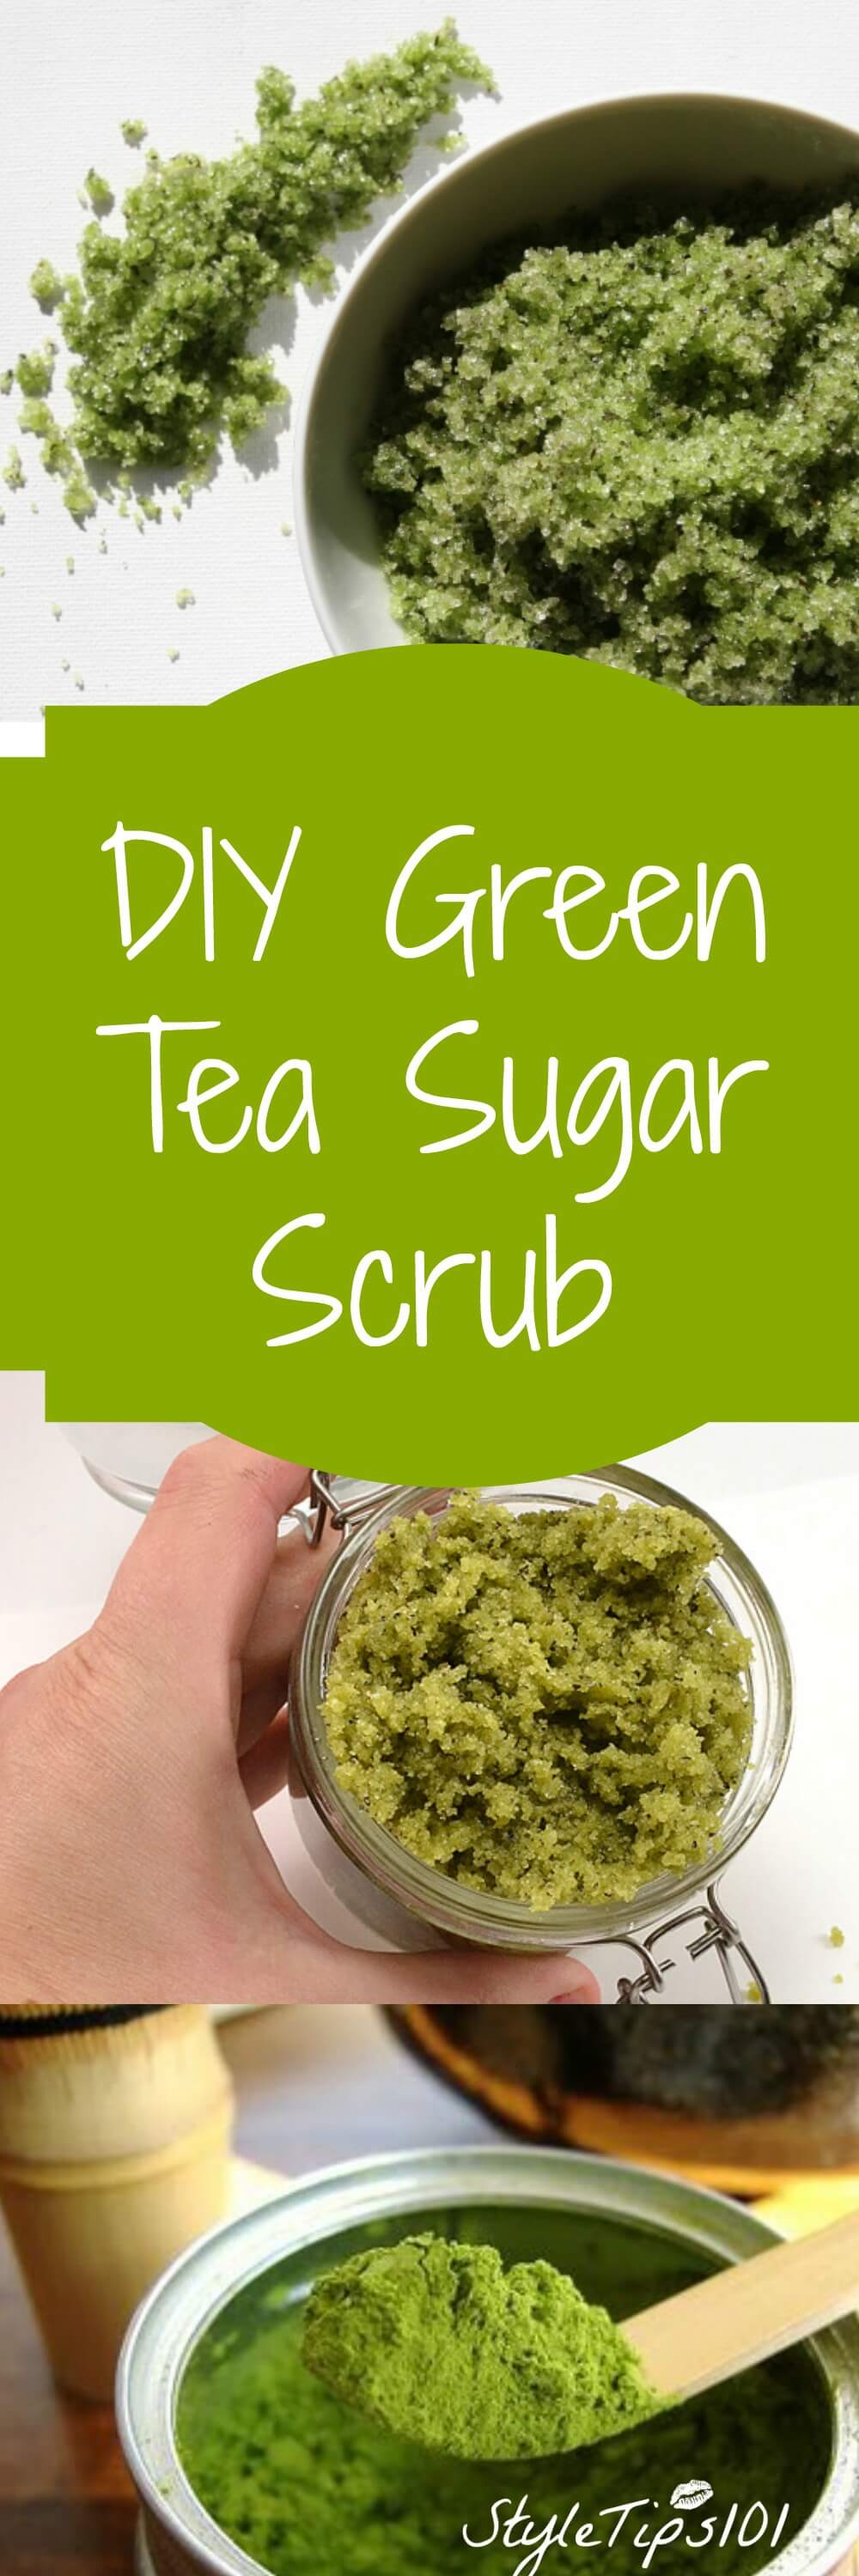 diy green tea sugar scrub